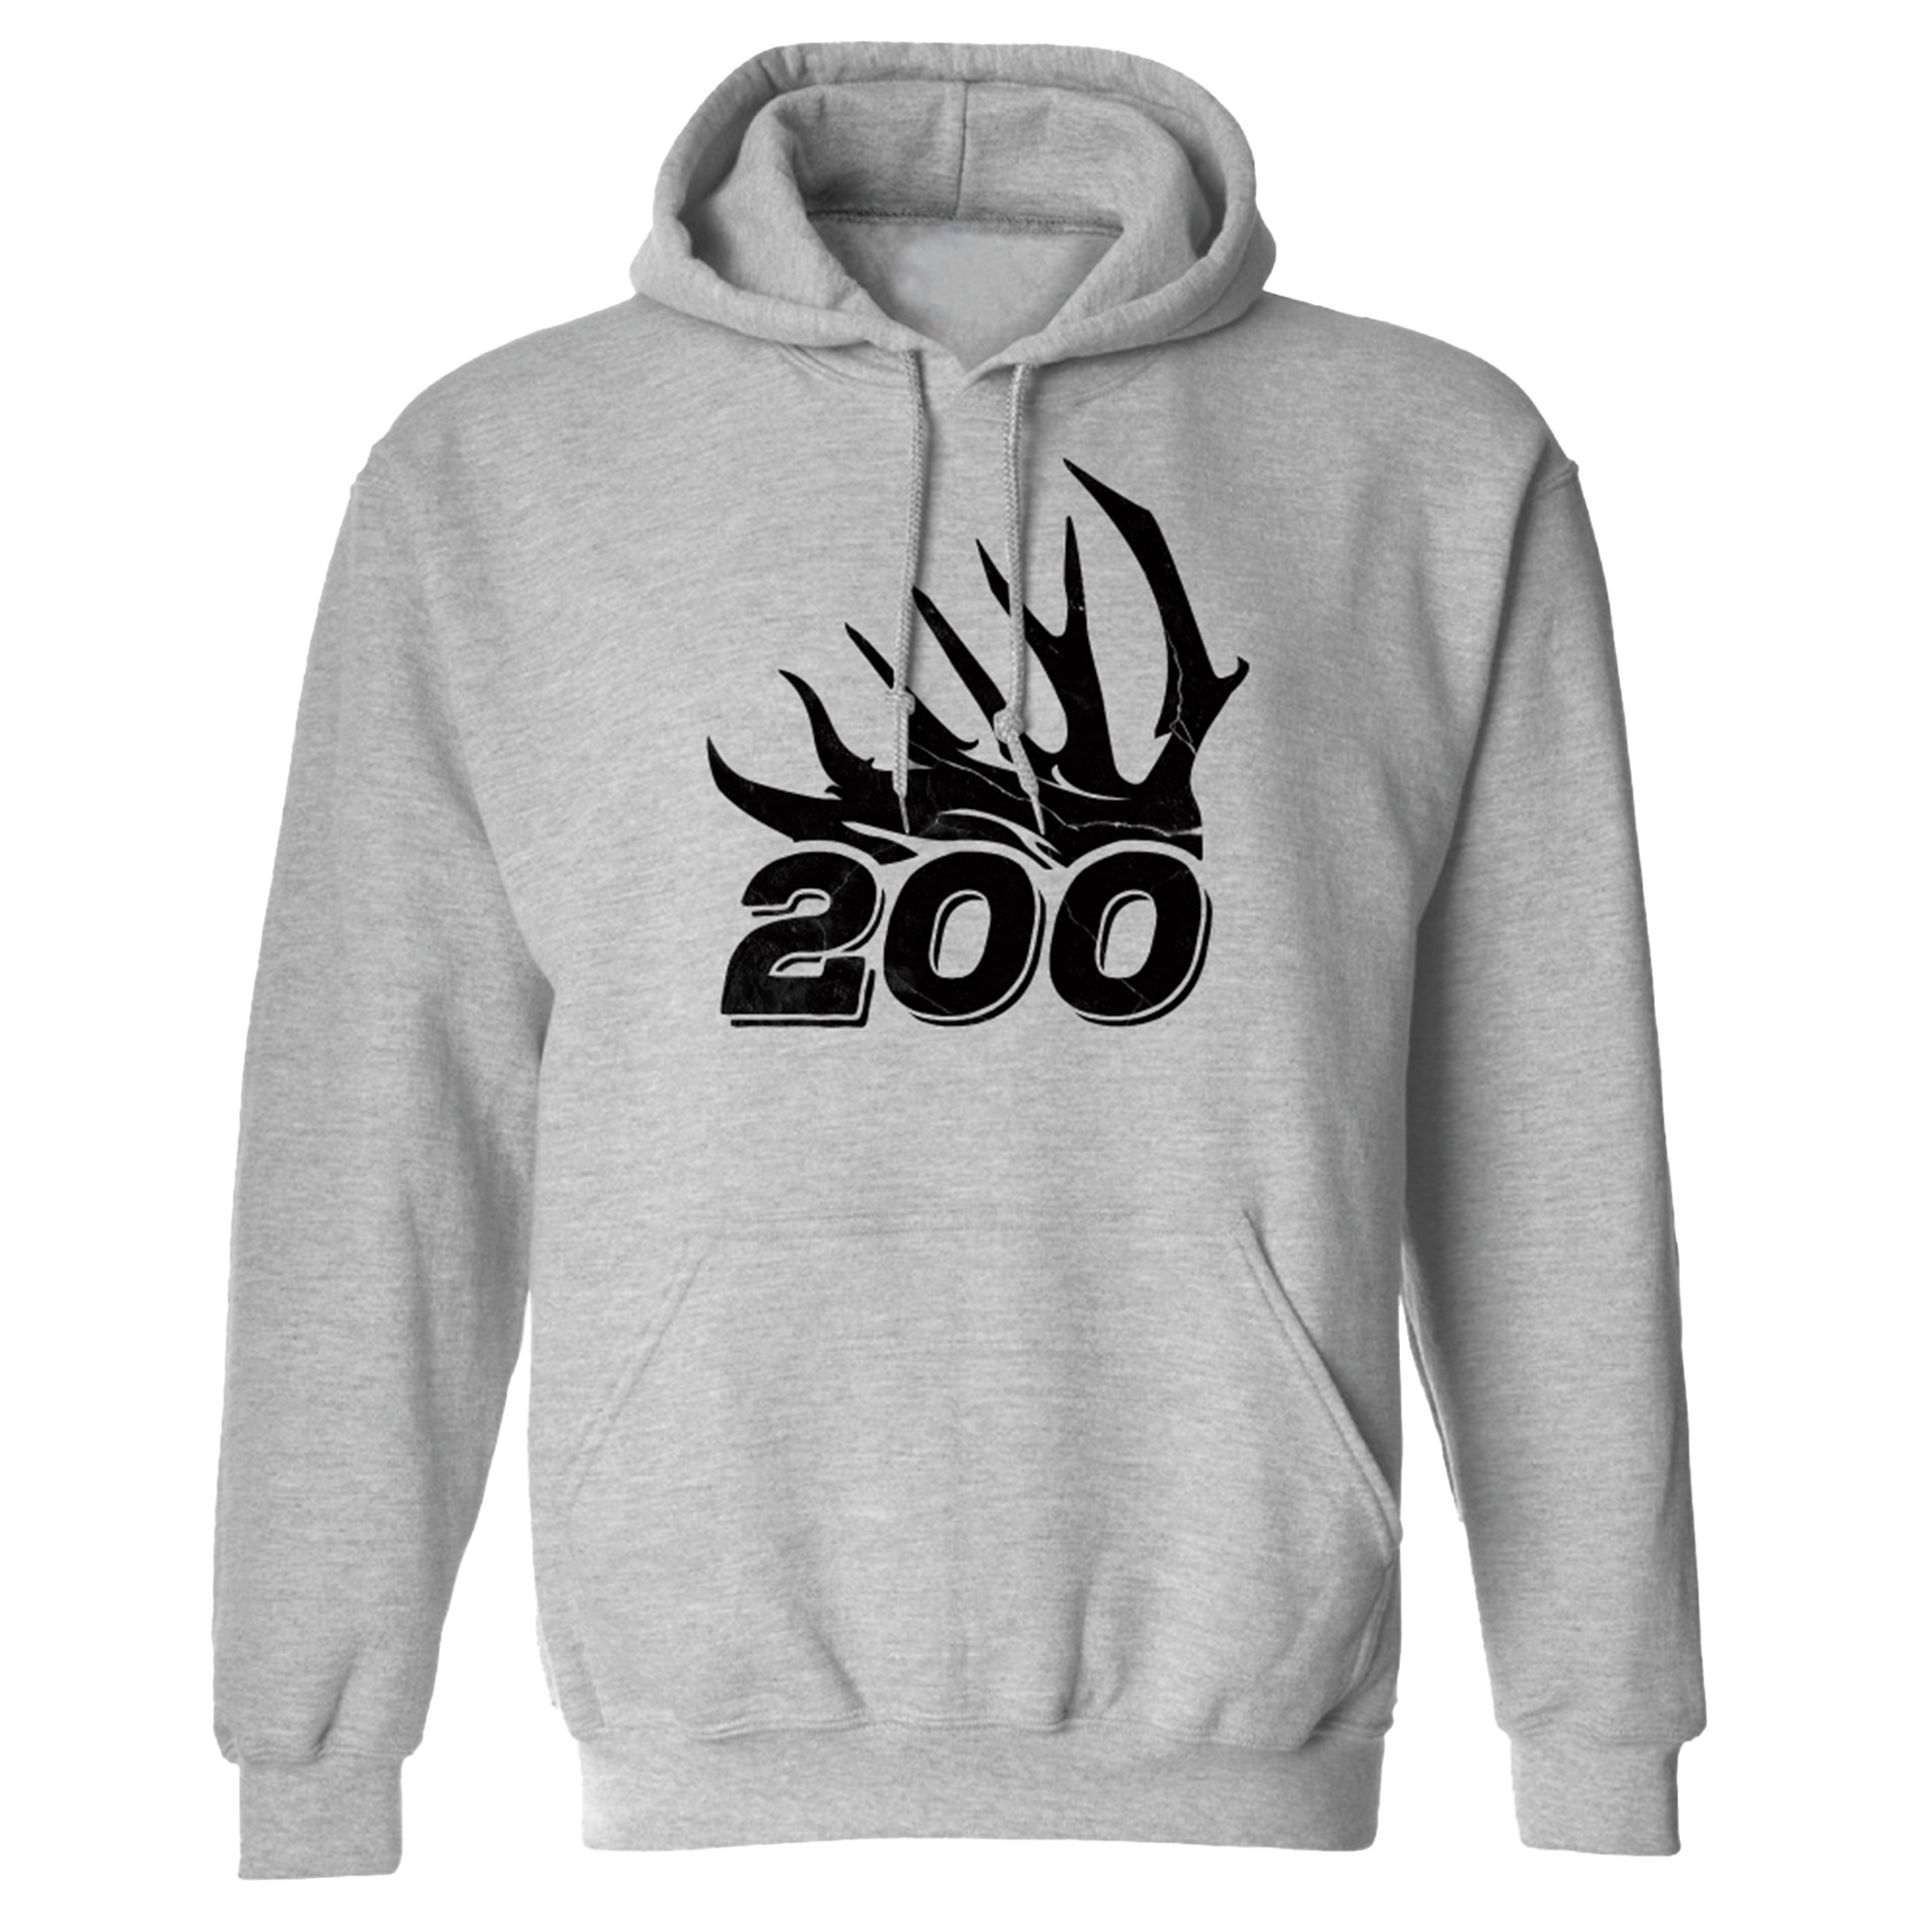 200 Yeti Mugs - Team 200 Apparel